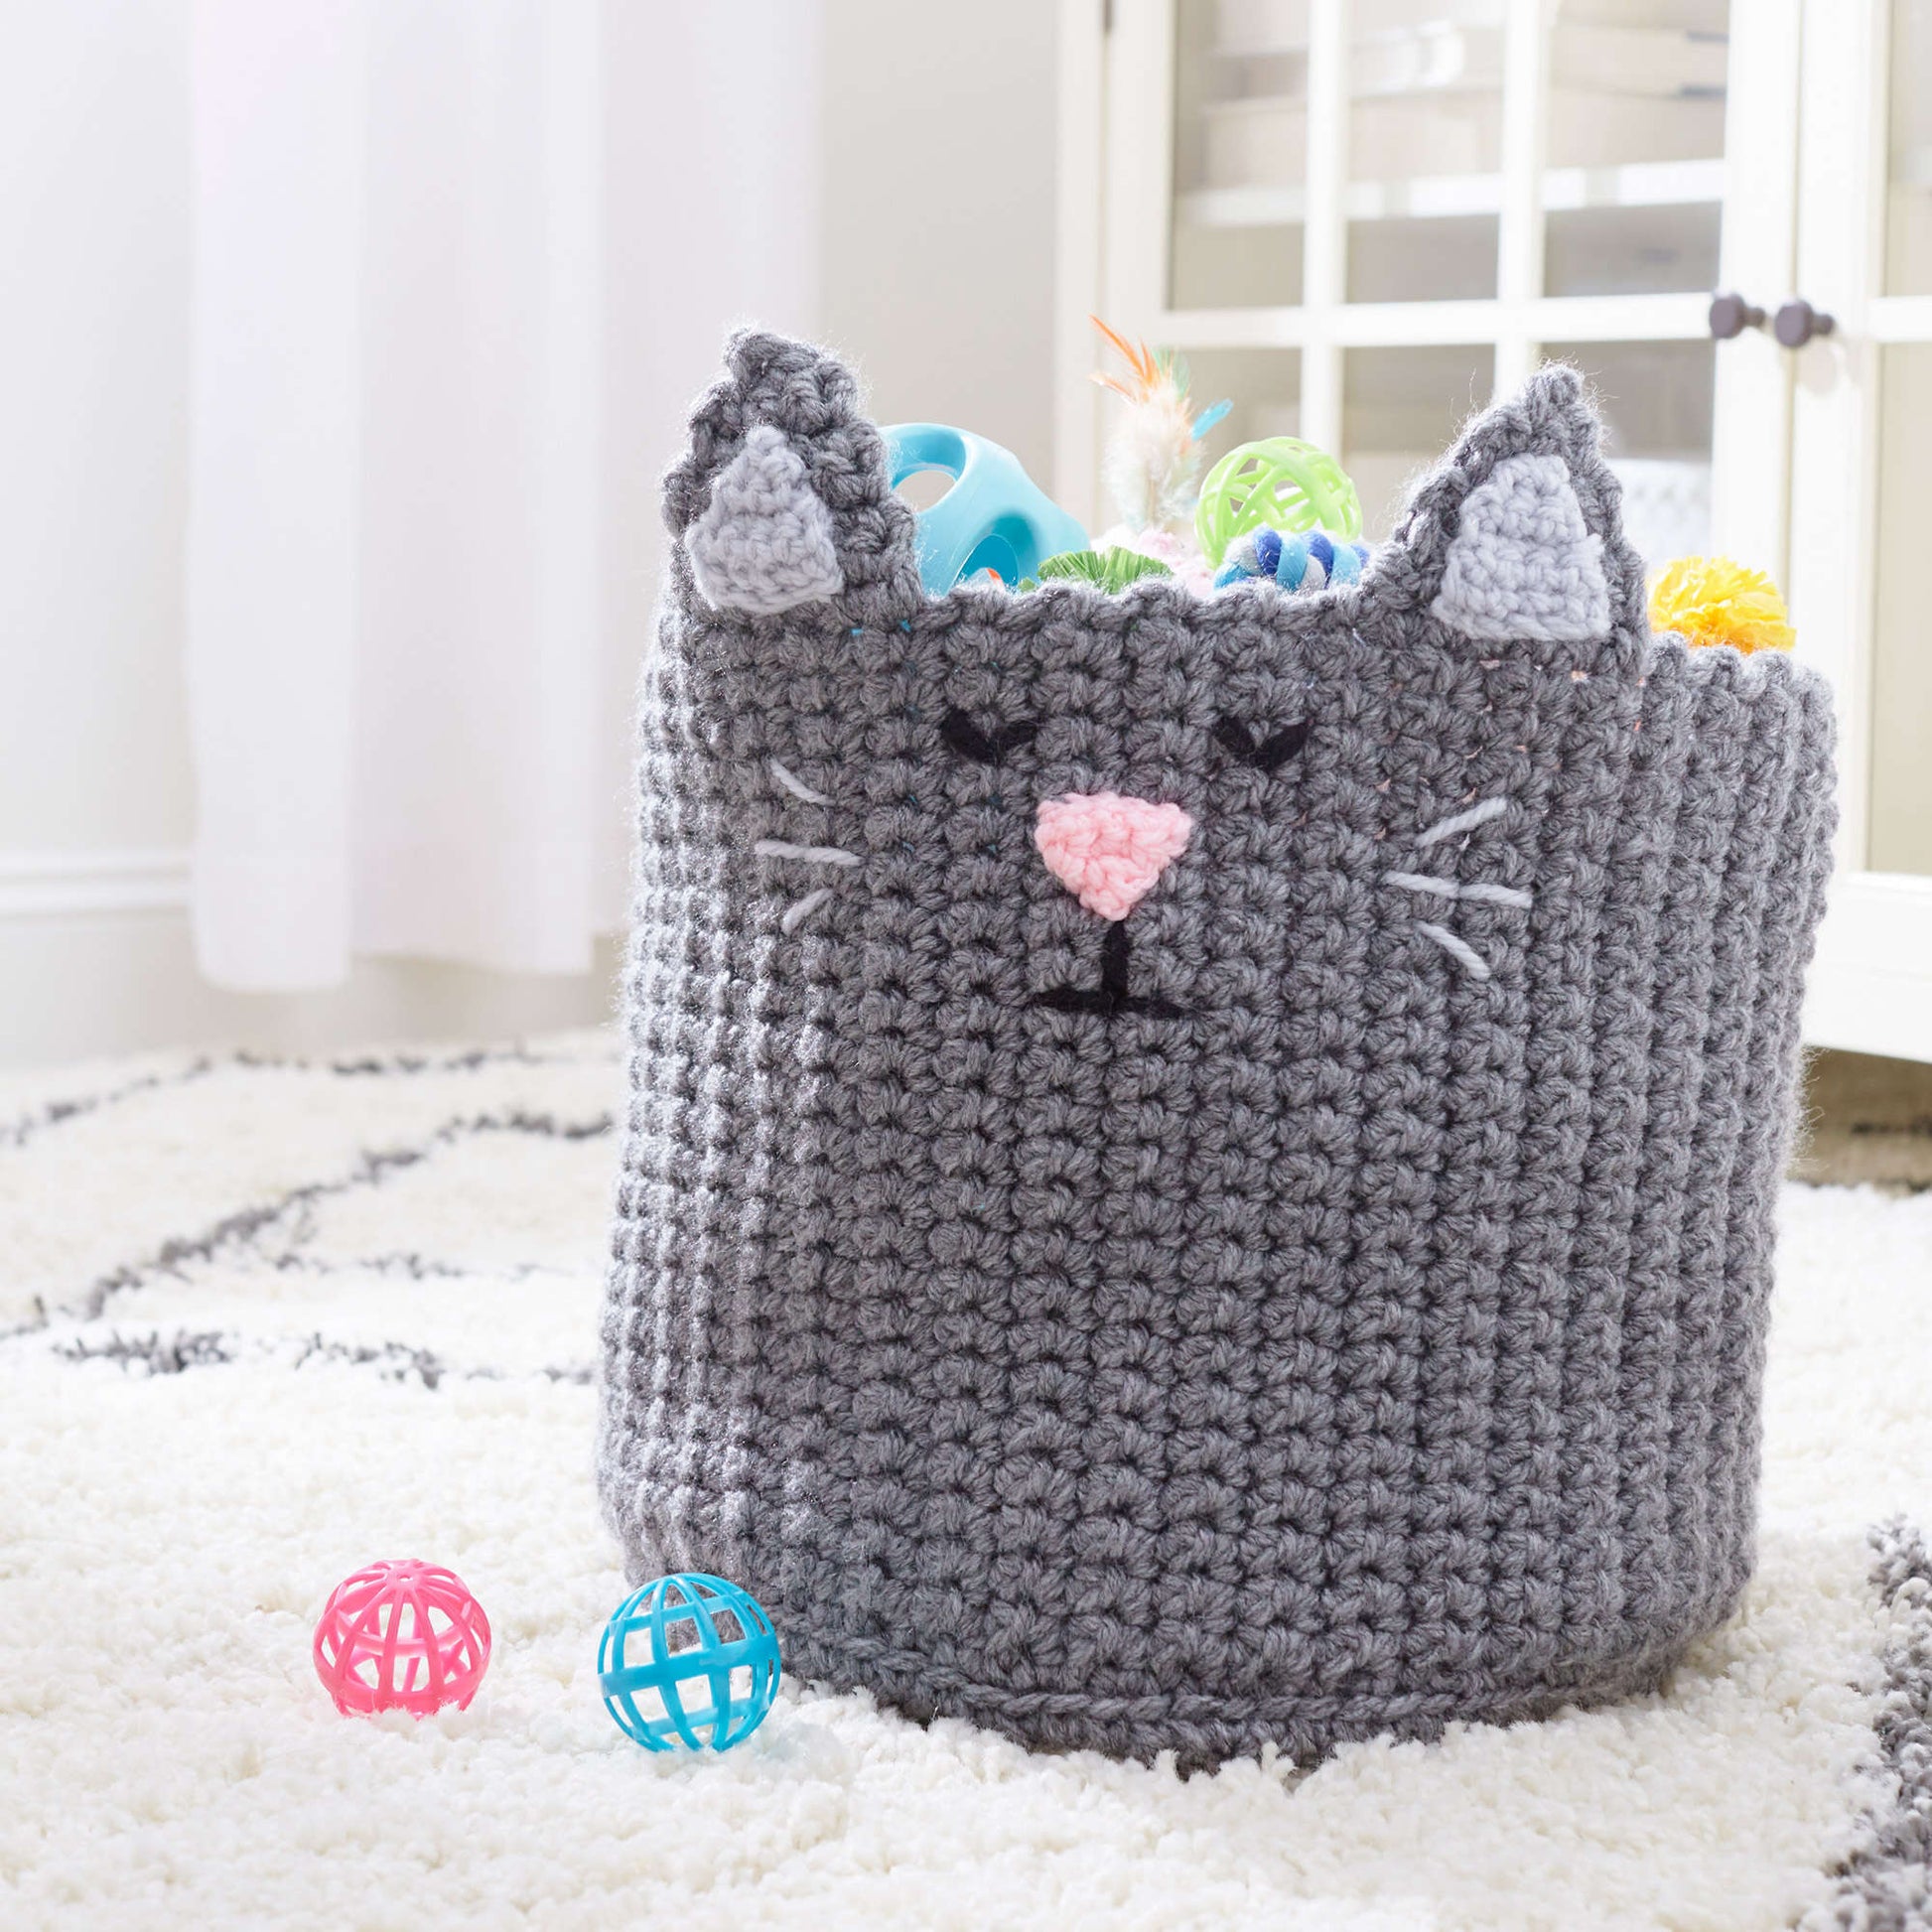 Free Red Heart Crochet Kitty Toy Basket Pattern